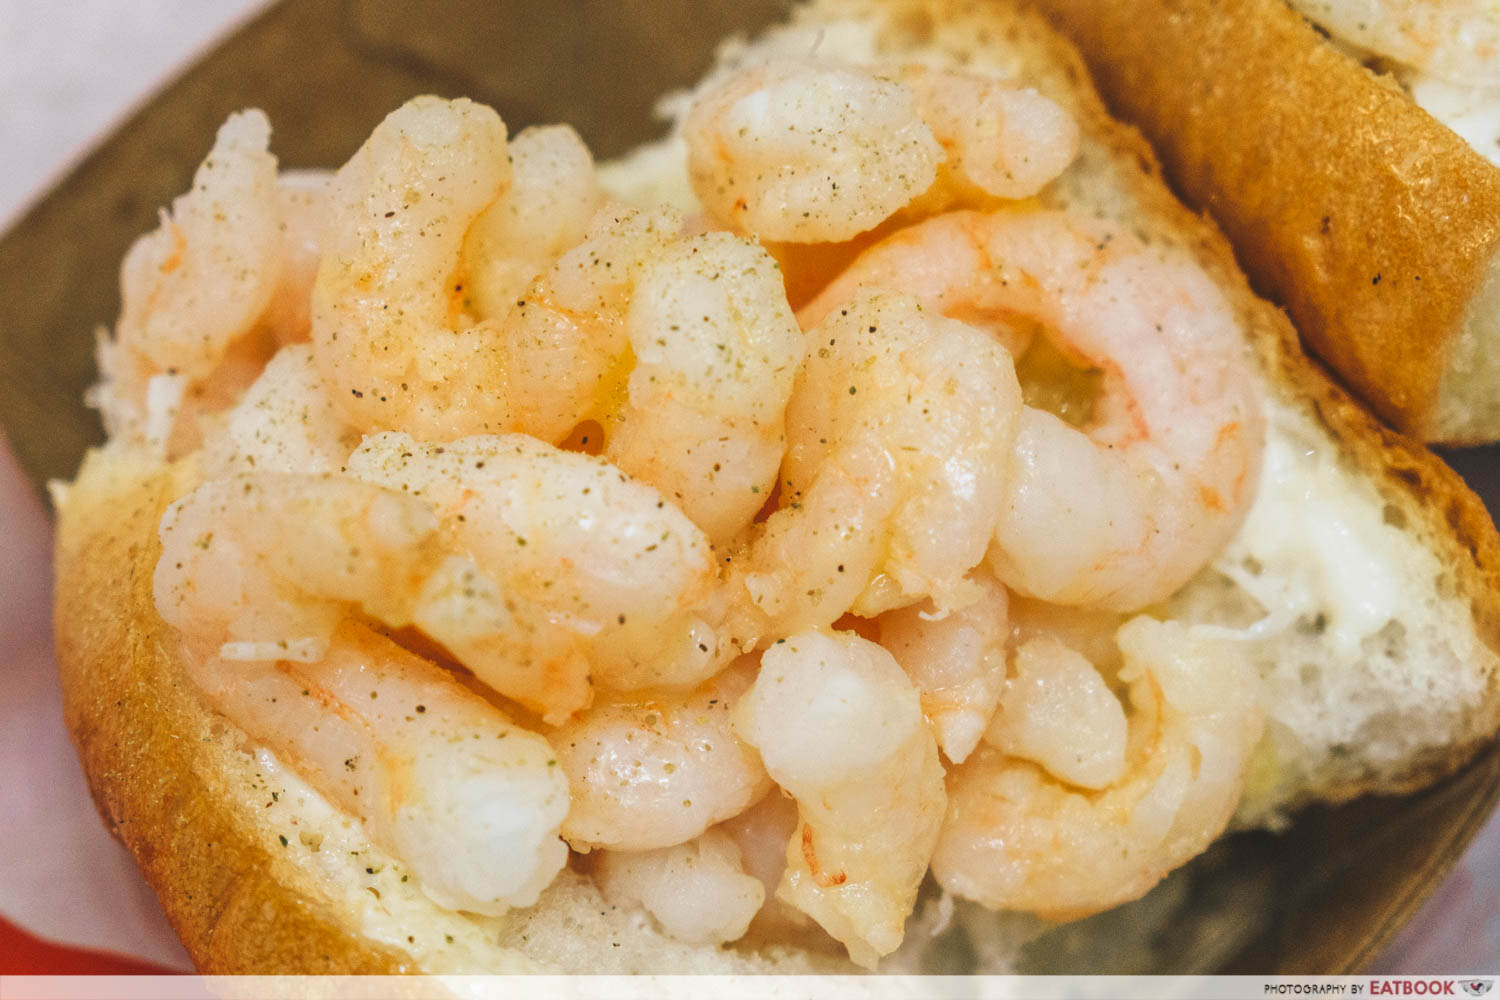 Luke's Lobster shrimp roll